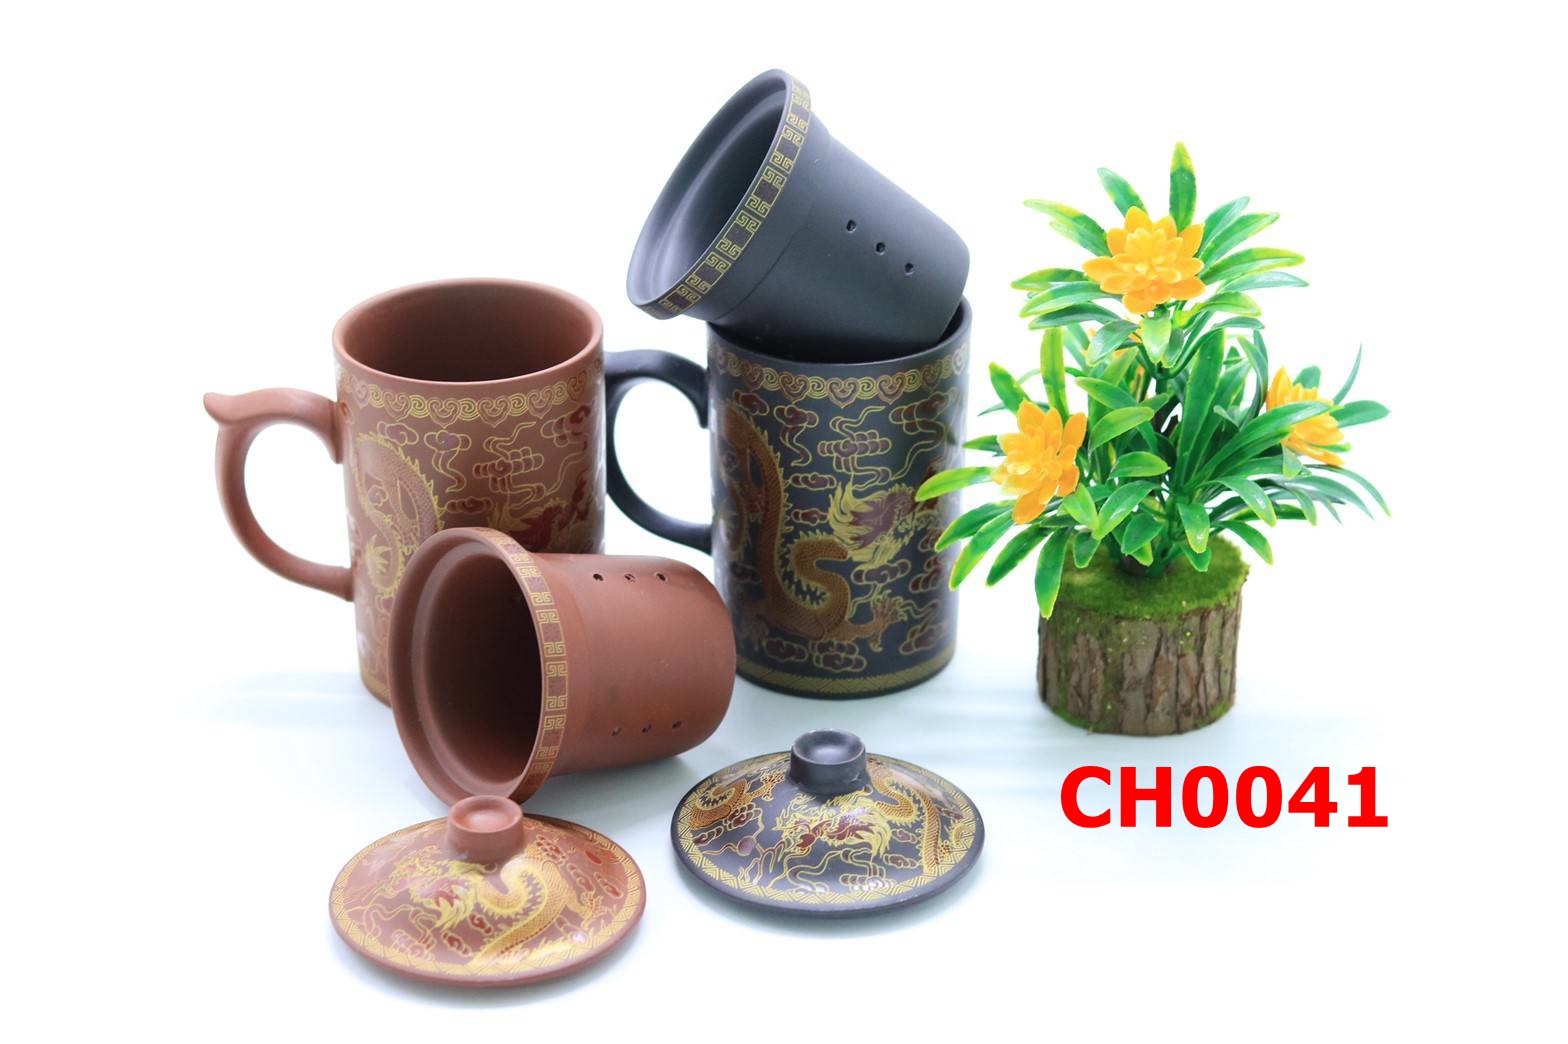 แก้วชงชามีที่กรองในตัว แก้วชงชา แก้วเซรามิค ชา ch0041